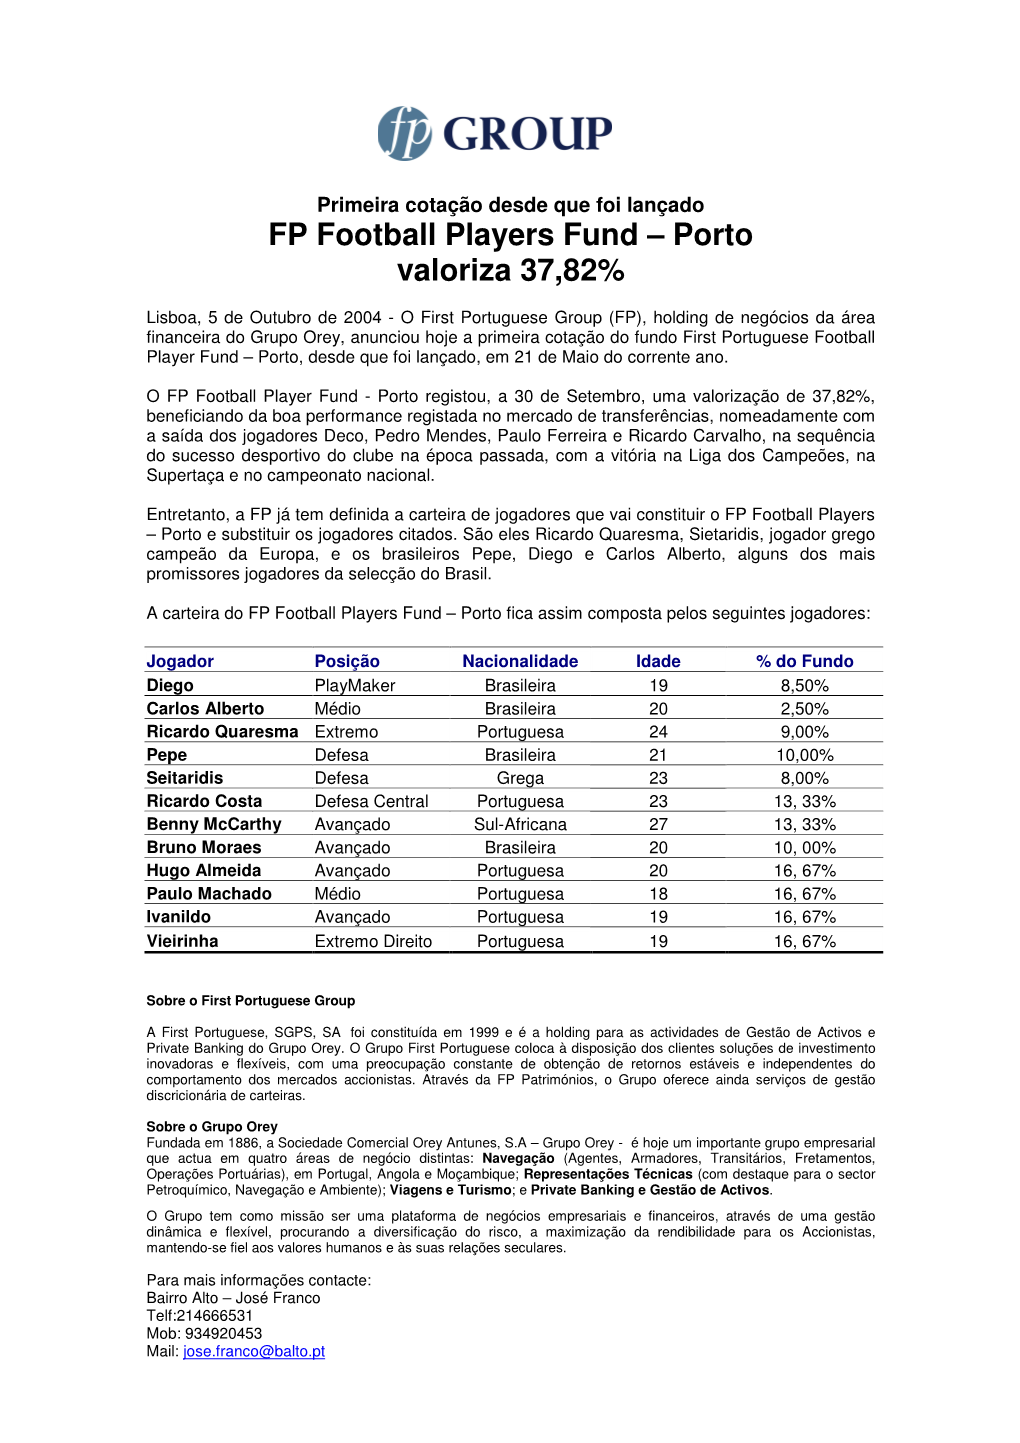 FP Football Players Fund – Porto Valoriza 37,82%